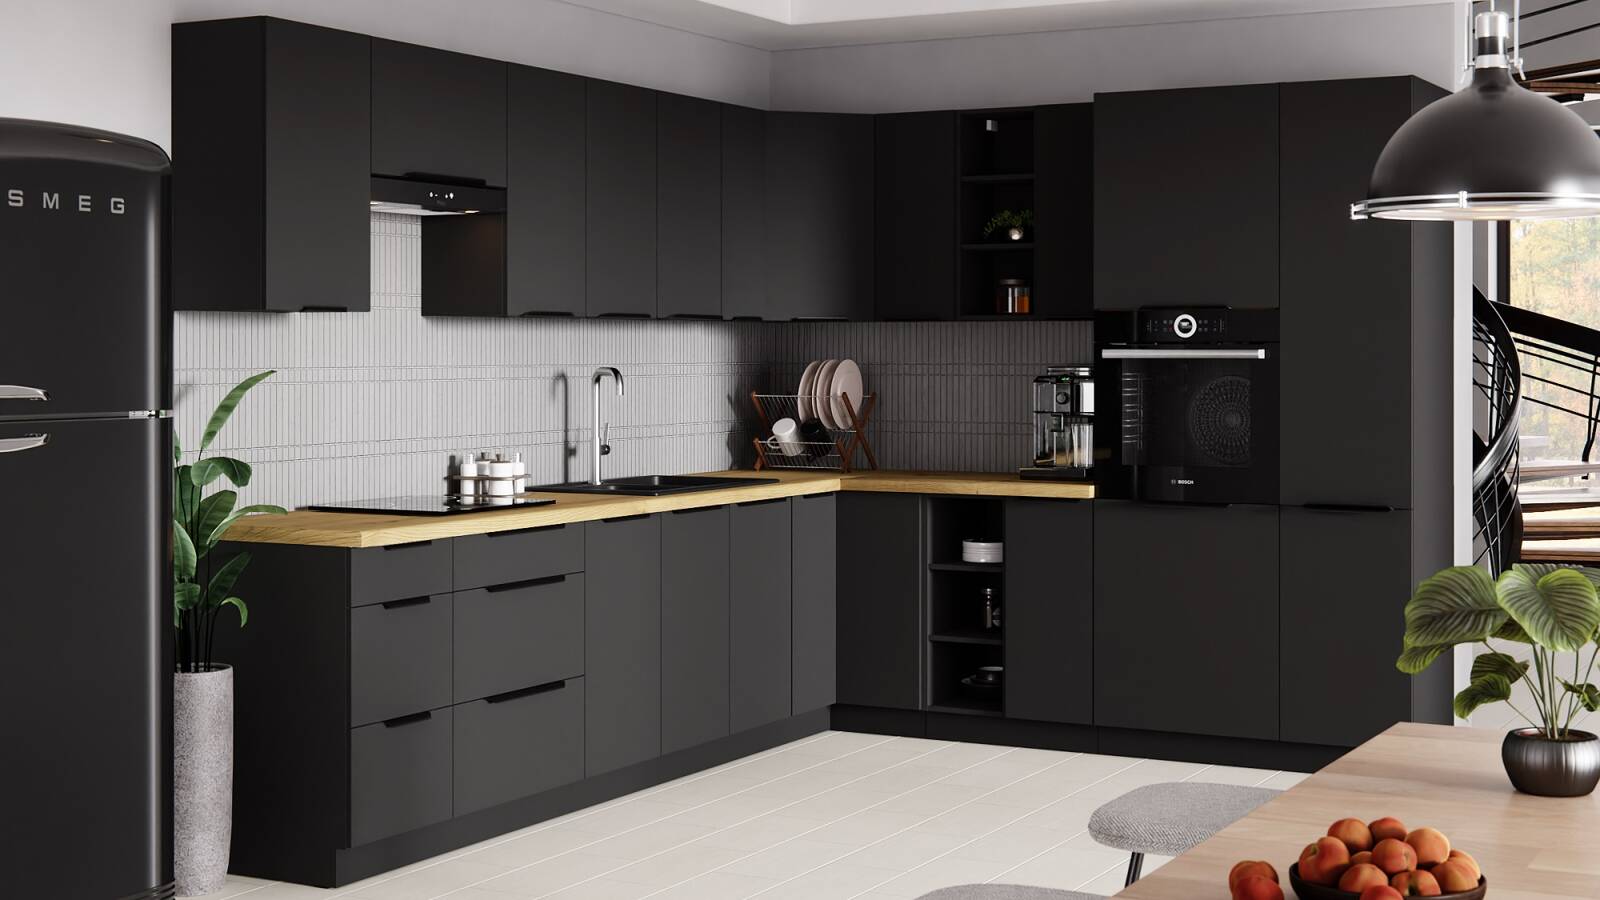 Küchensockel Schwarz 60 DPM-210 Schrank Dampf, Einbau-Mikrowelle Backofen für 2F Möbel und - Unsere Hitze 24unseremoebel | alle resistent gegen Flecken und